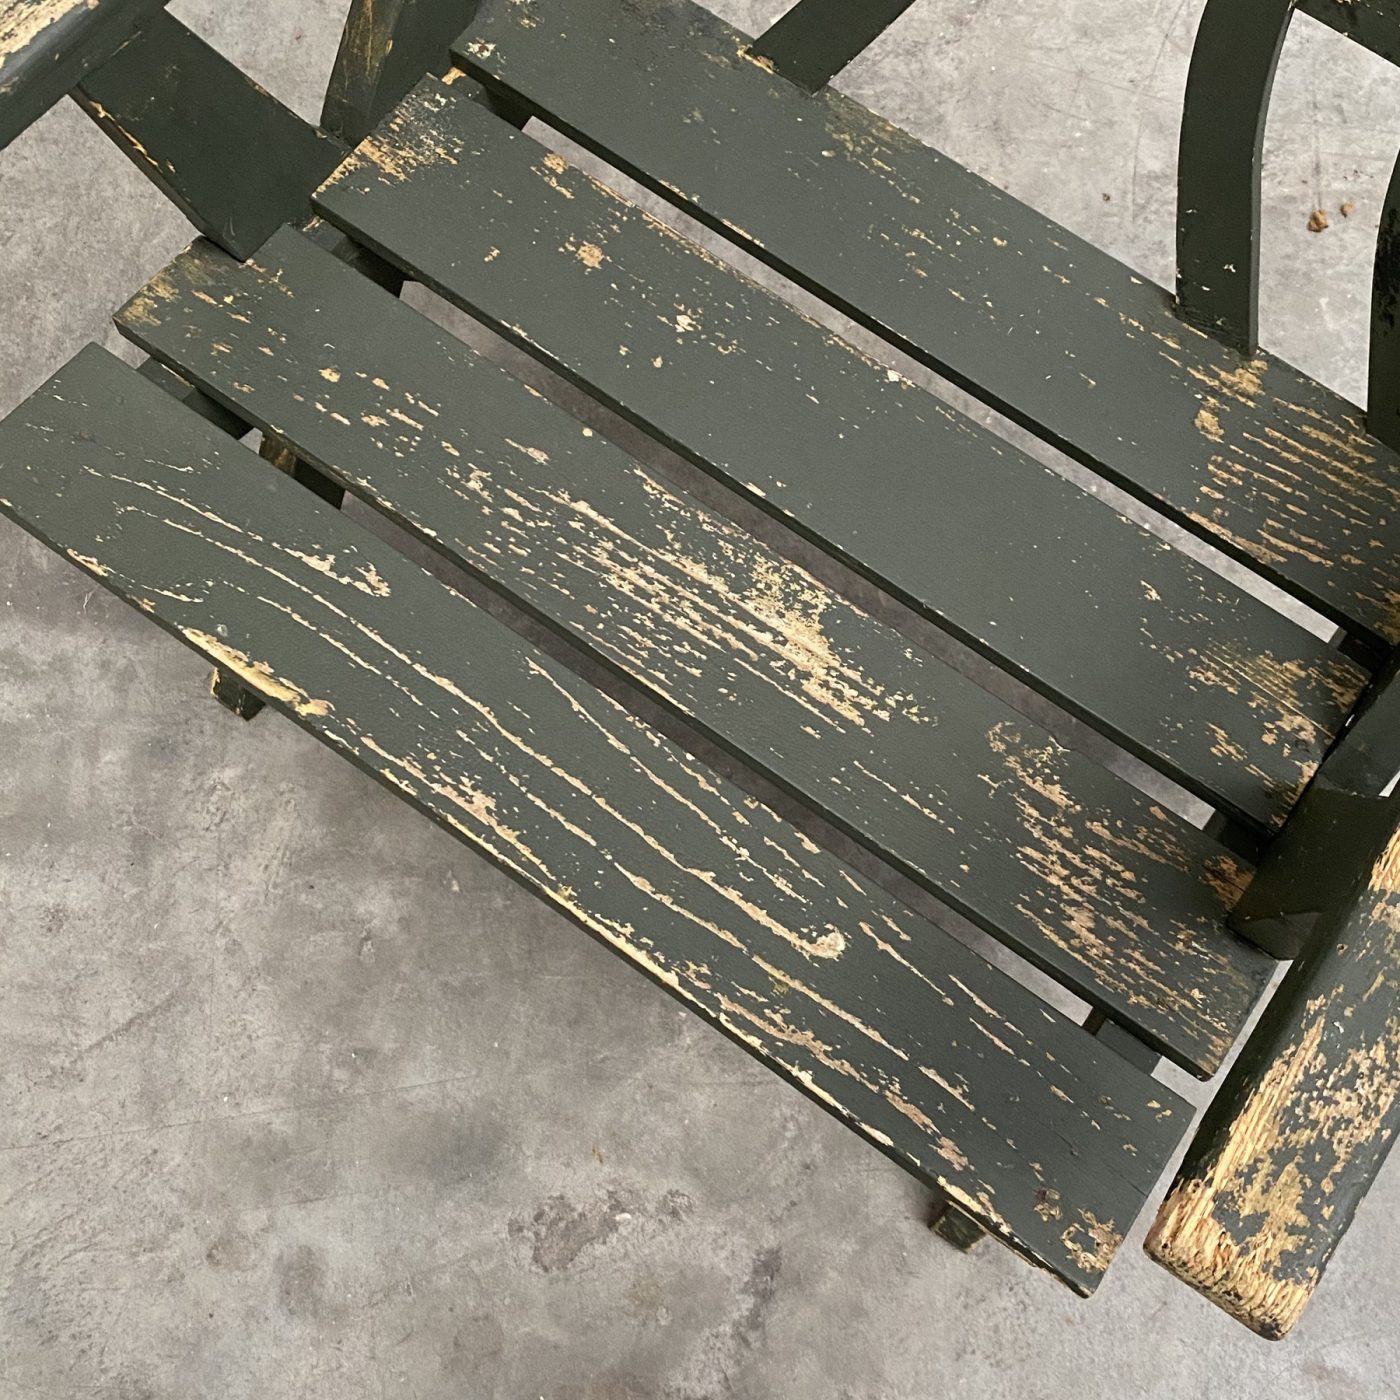 objet-vagabond-wooden-chairs0005